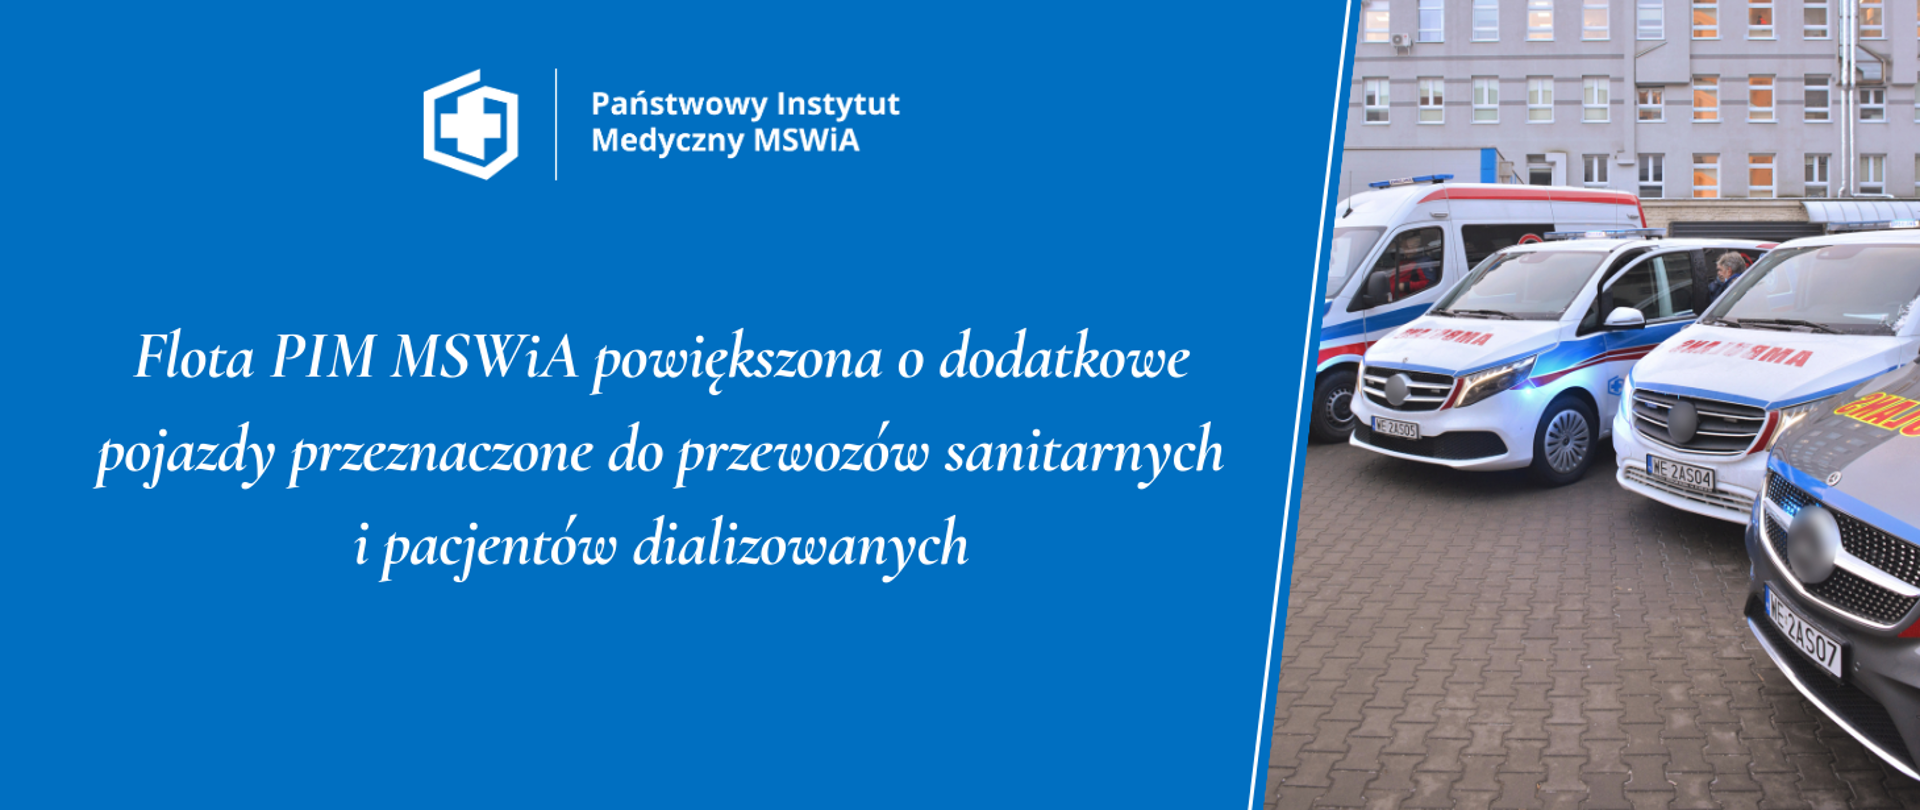 Flota PIM MSWiA powiększona o dodatkowe pojazdy przeznaczone do przewozów sanitarnych
i pacjentów dializowanych